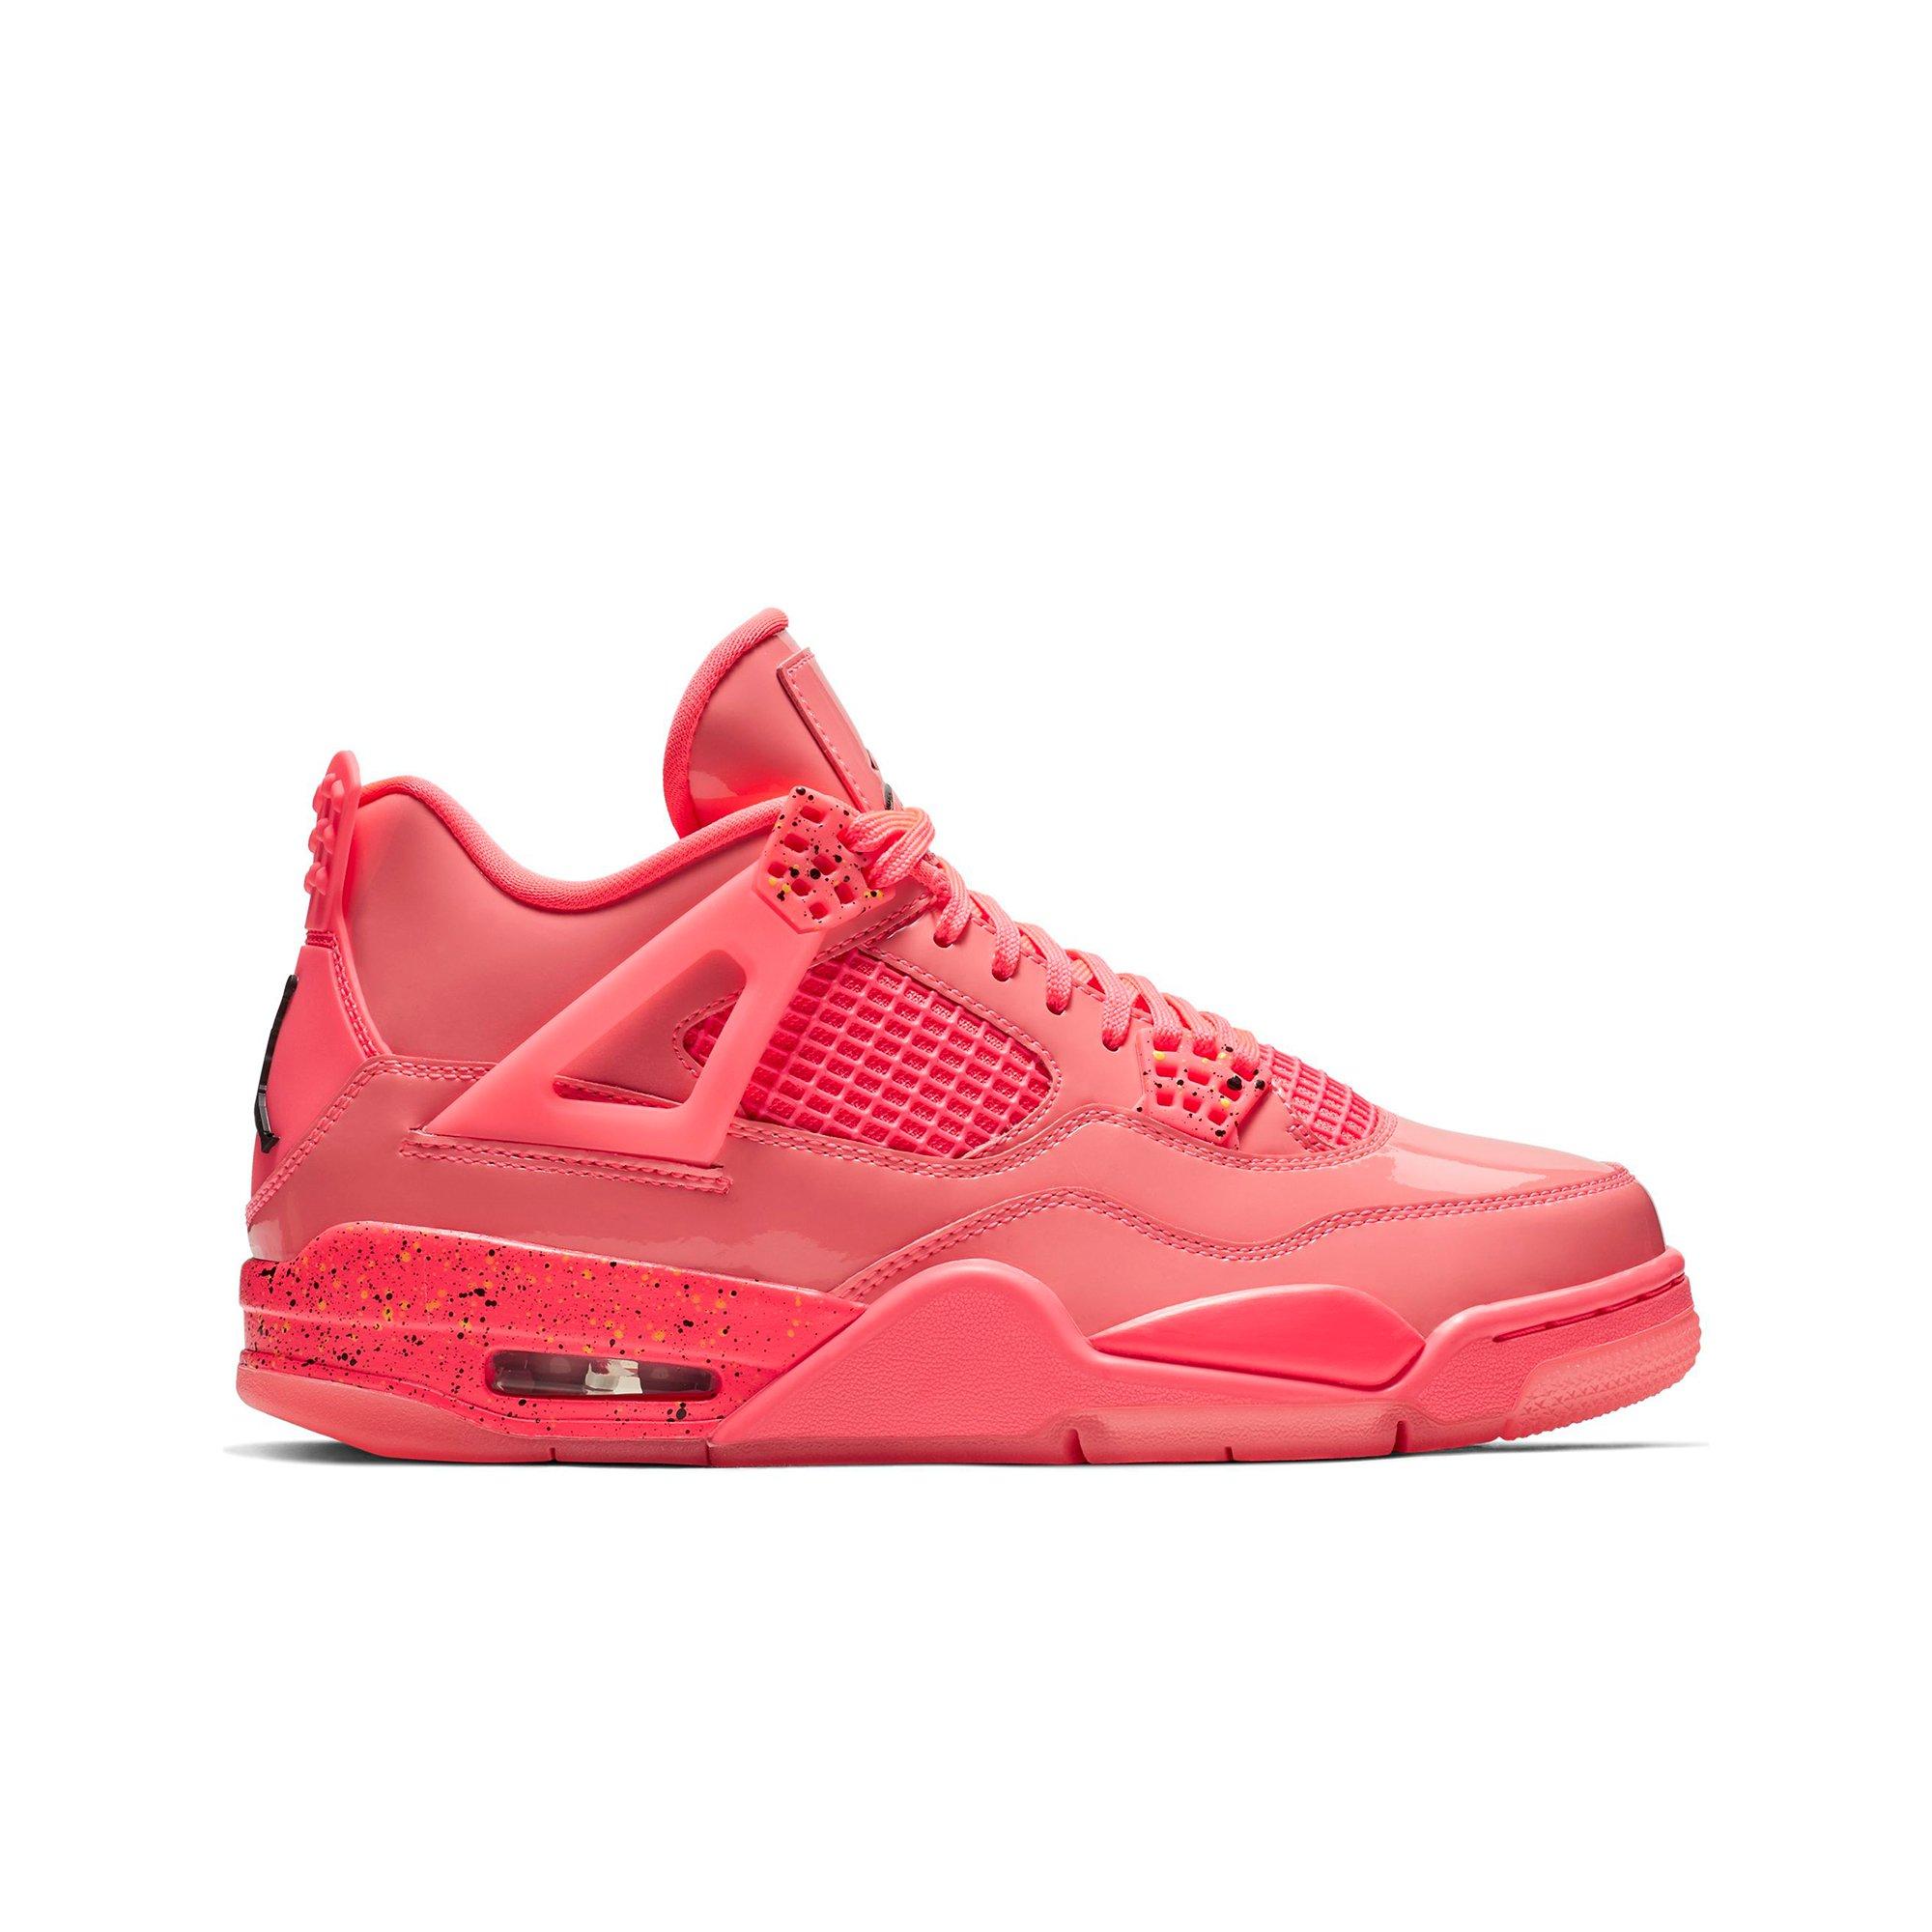 Sneakers Release \u0026#8211; Jordan Retro 4 